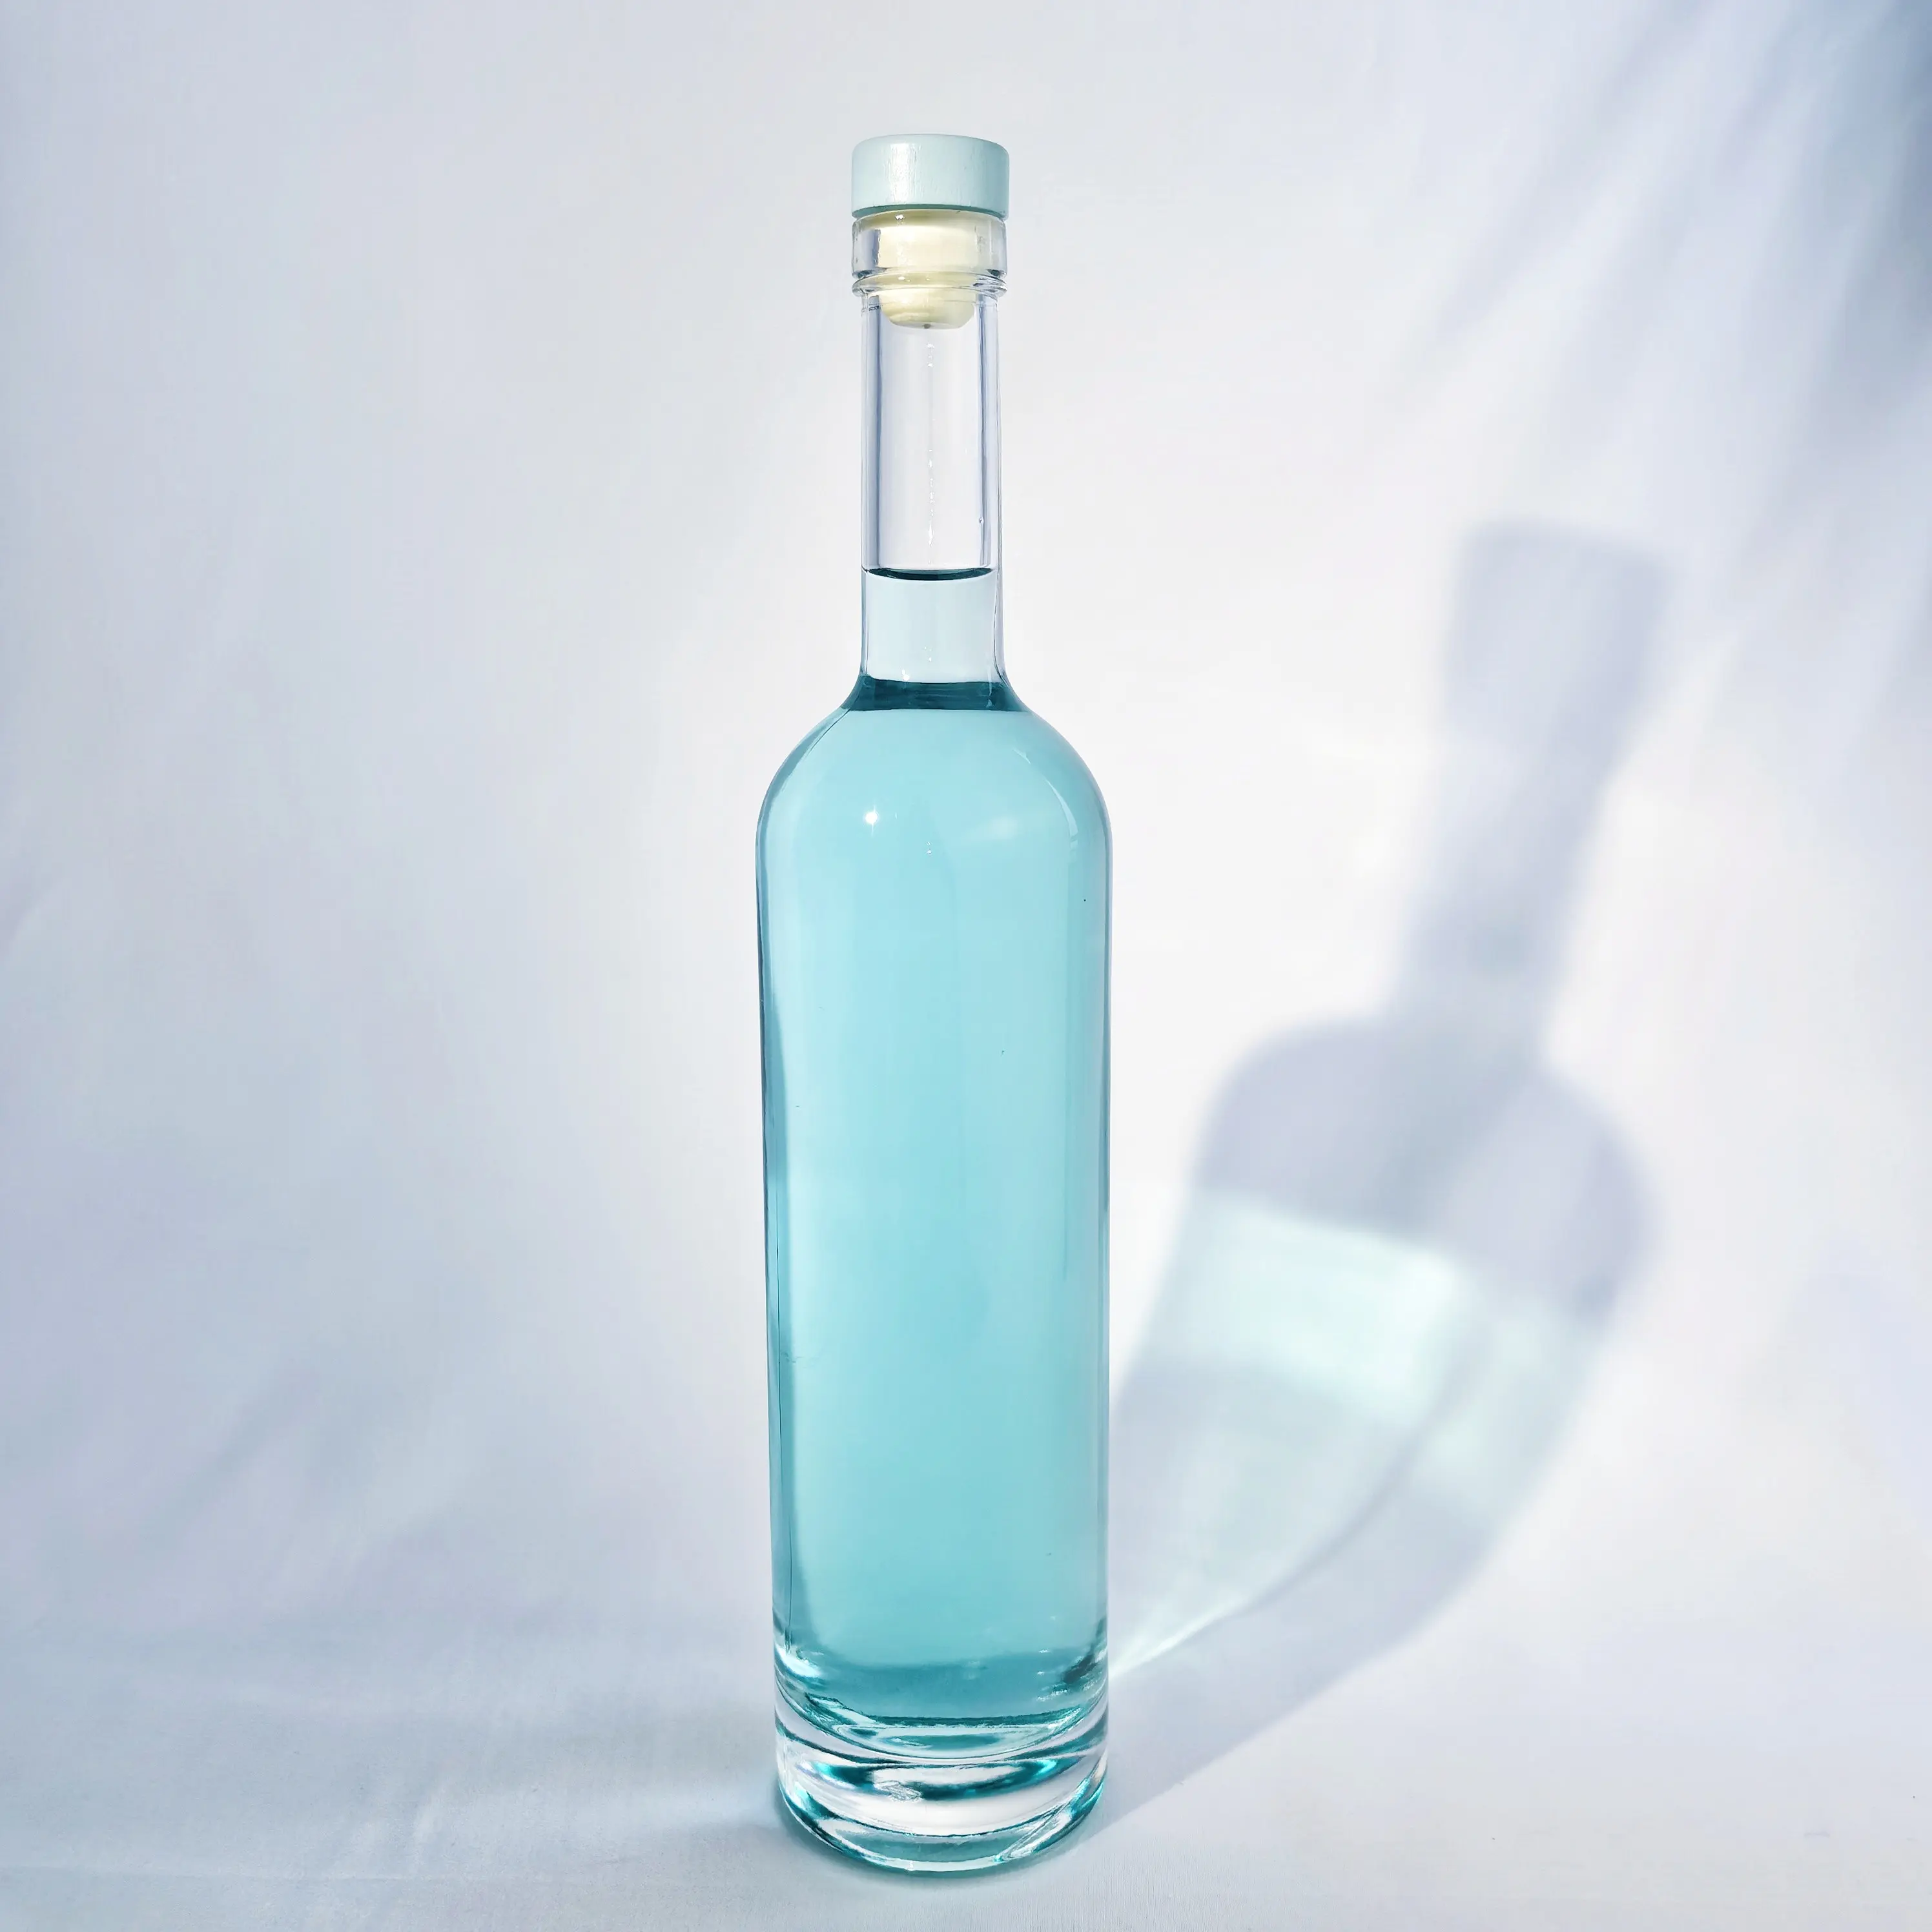 Klasik 500ml 700ml 750ml botol kaca untuk merek Vodka wiski Tequila Gin botol kaca